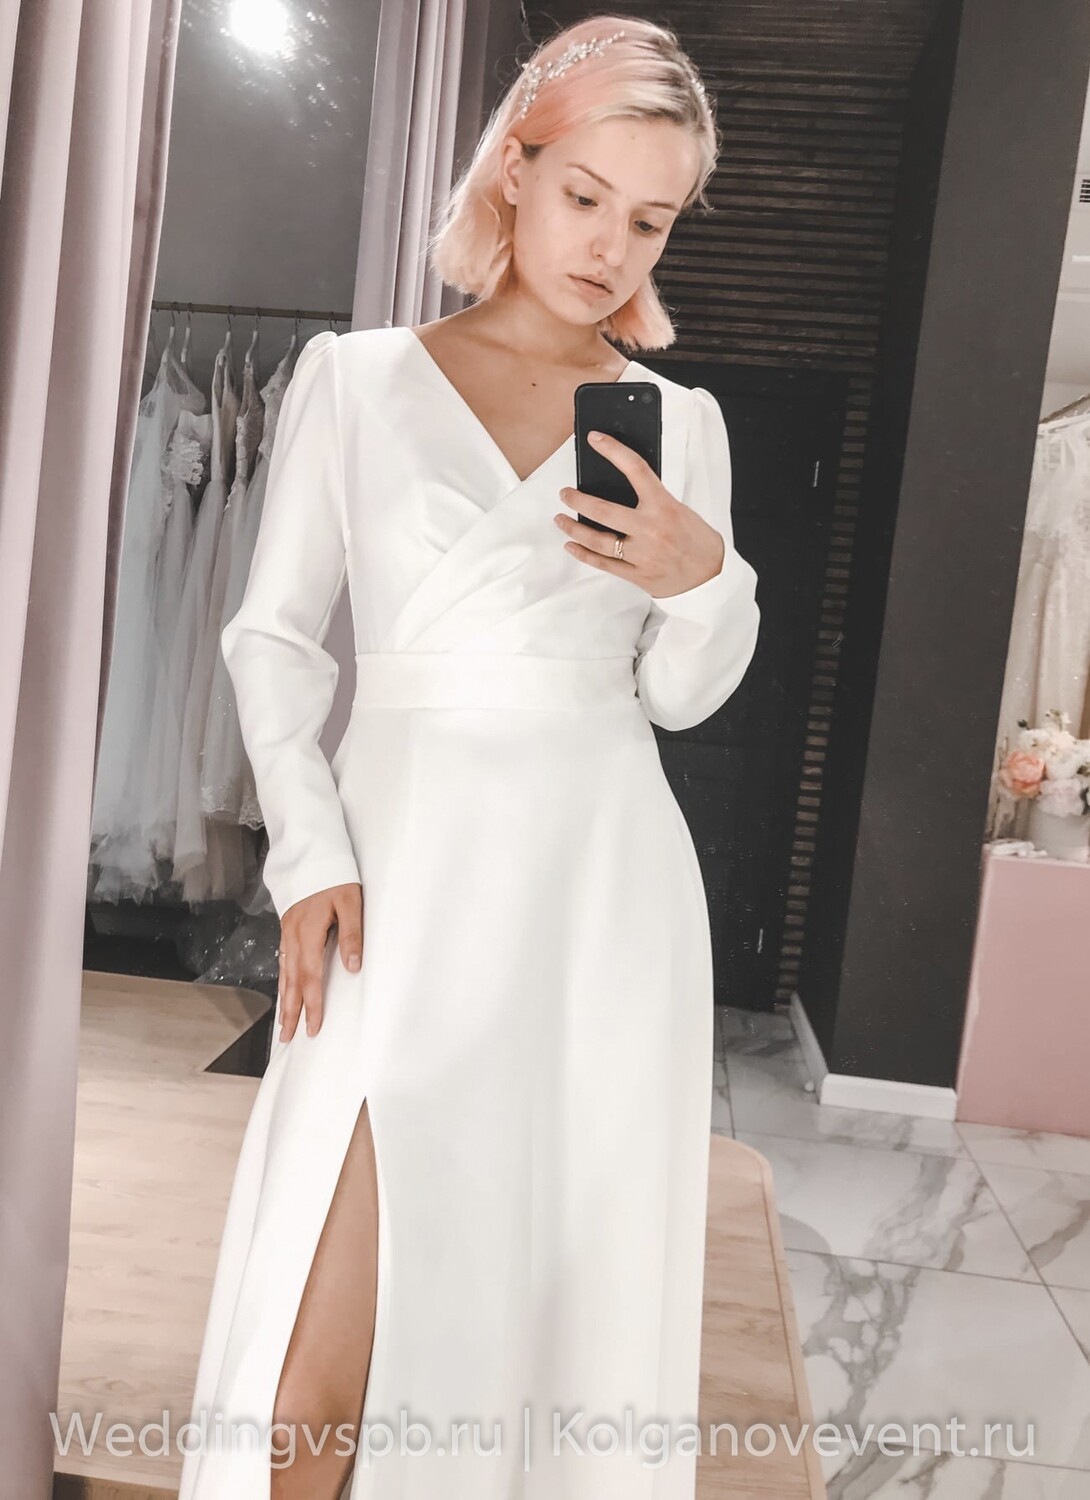 Свадебное платье "Анет" (50 размер)